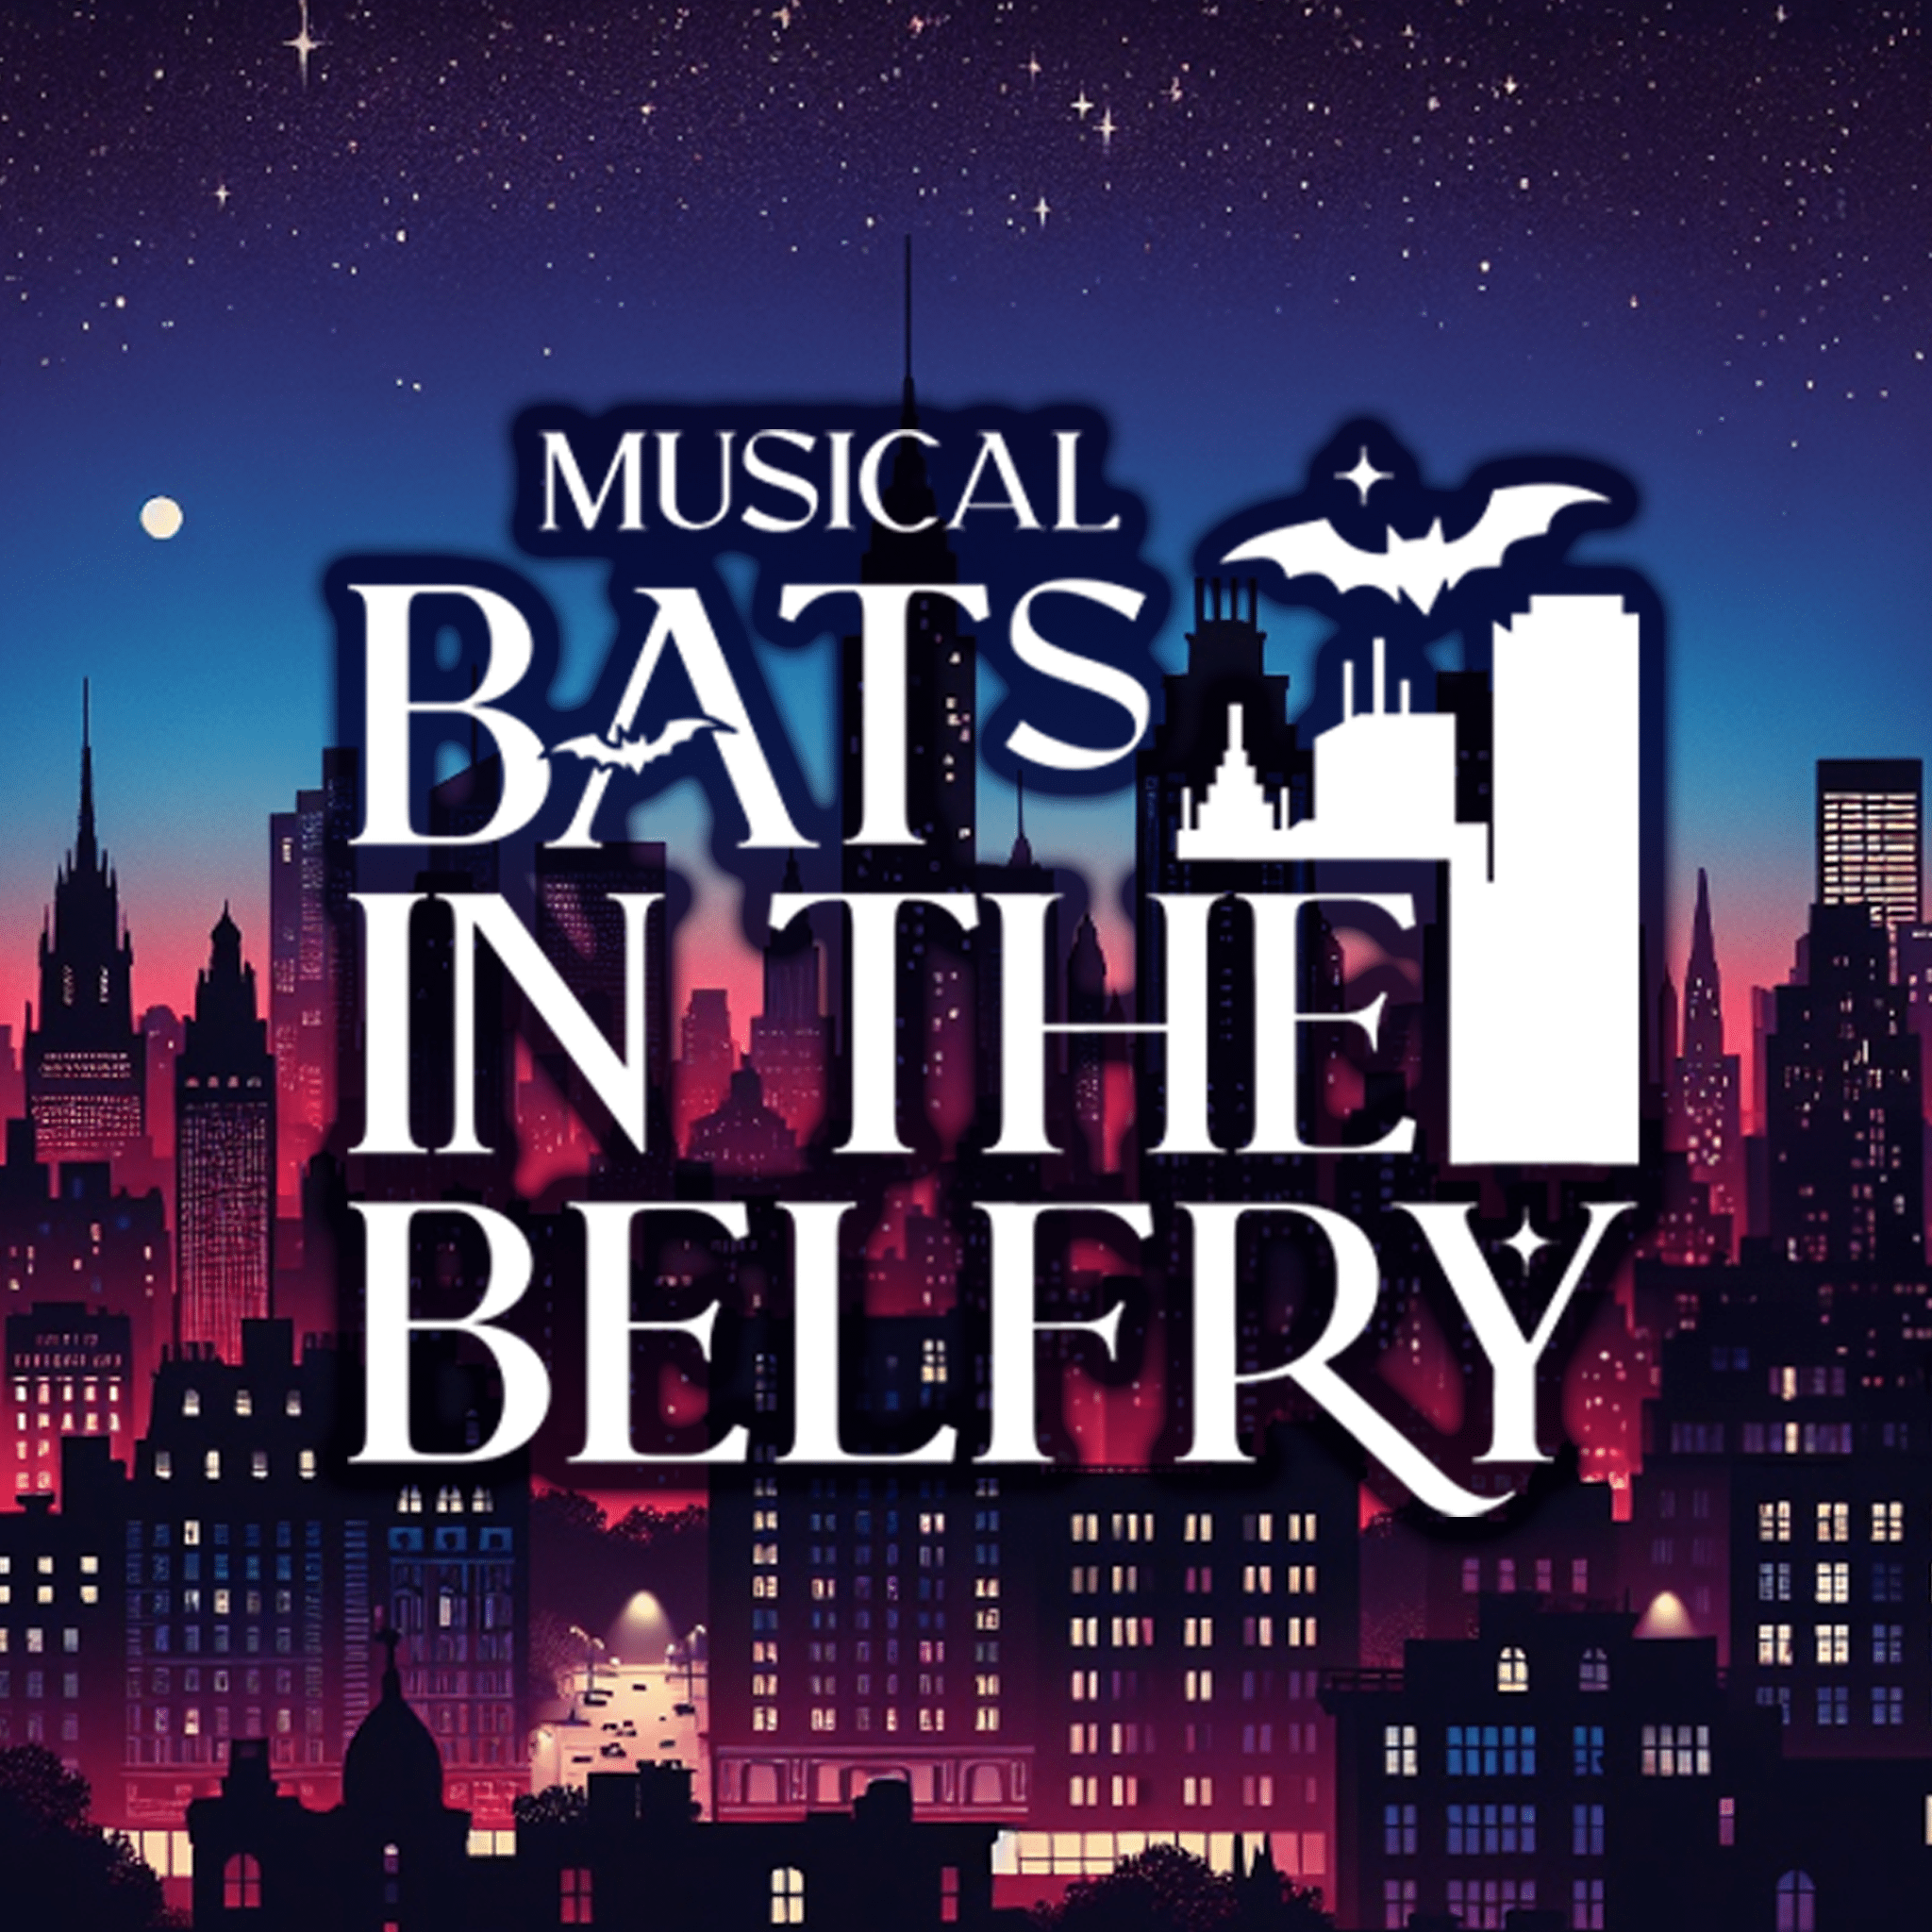 Musical『Bats in the Belfry』